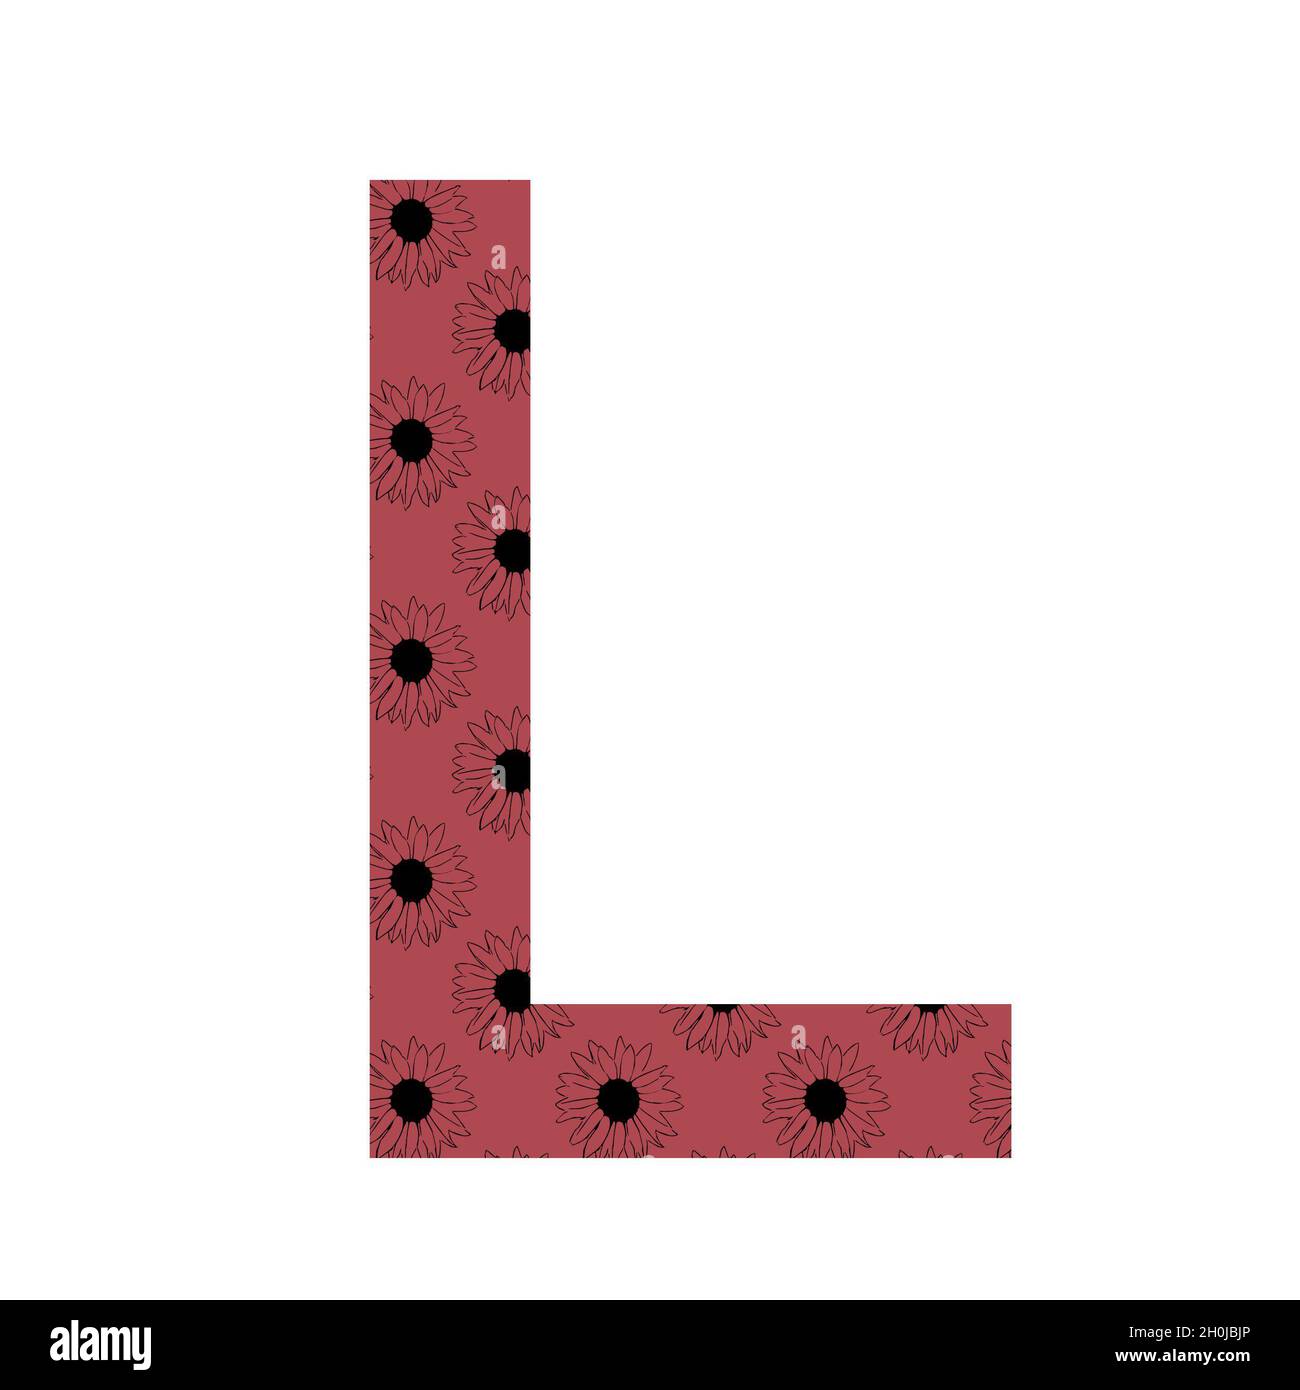 Lettre L de l'alphabet avec un motif de tournesols sur fond rose foncé, isolé sur fond blanc Banque D'Images